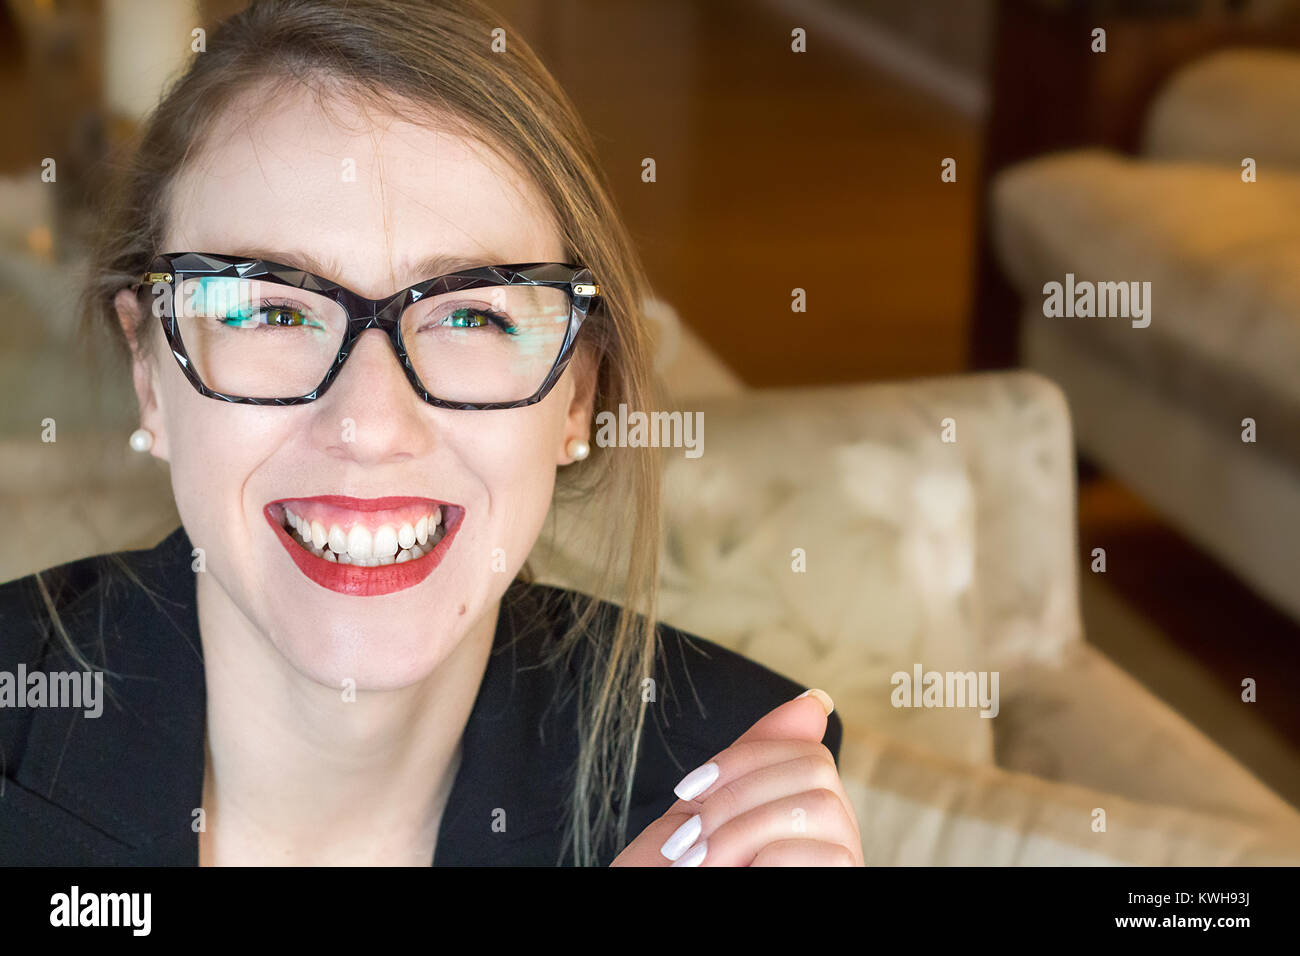 Portrait d'une jeune femme blonde portant des lunettes Vue de face, souriant, heureux, libre, lumière naturelle, à l'intérieur. Banque D'Images